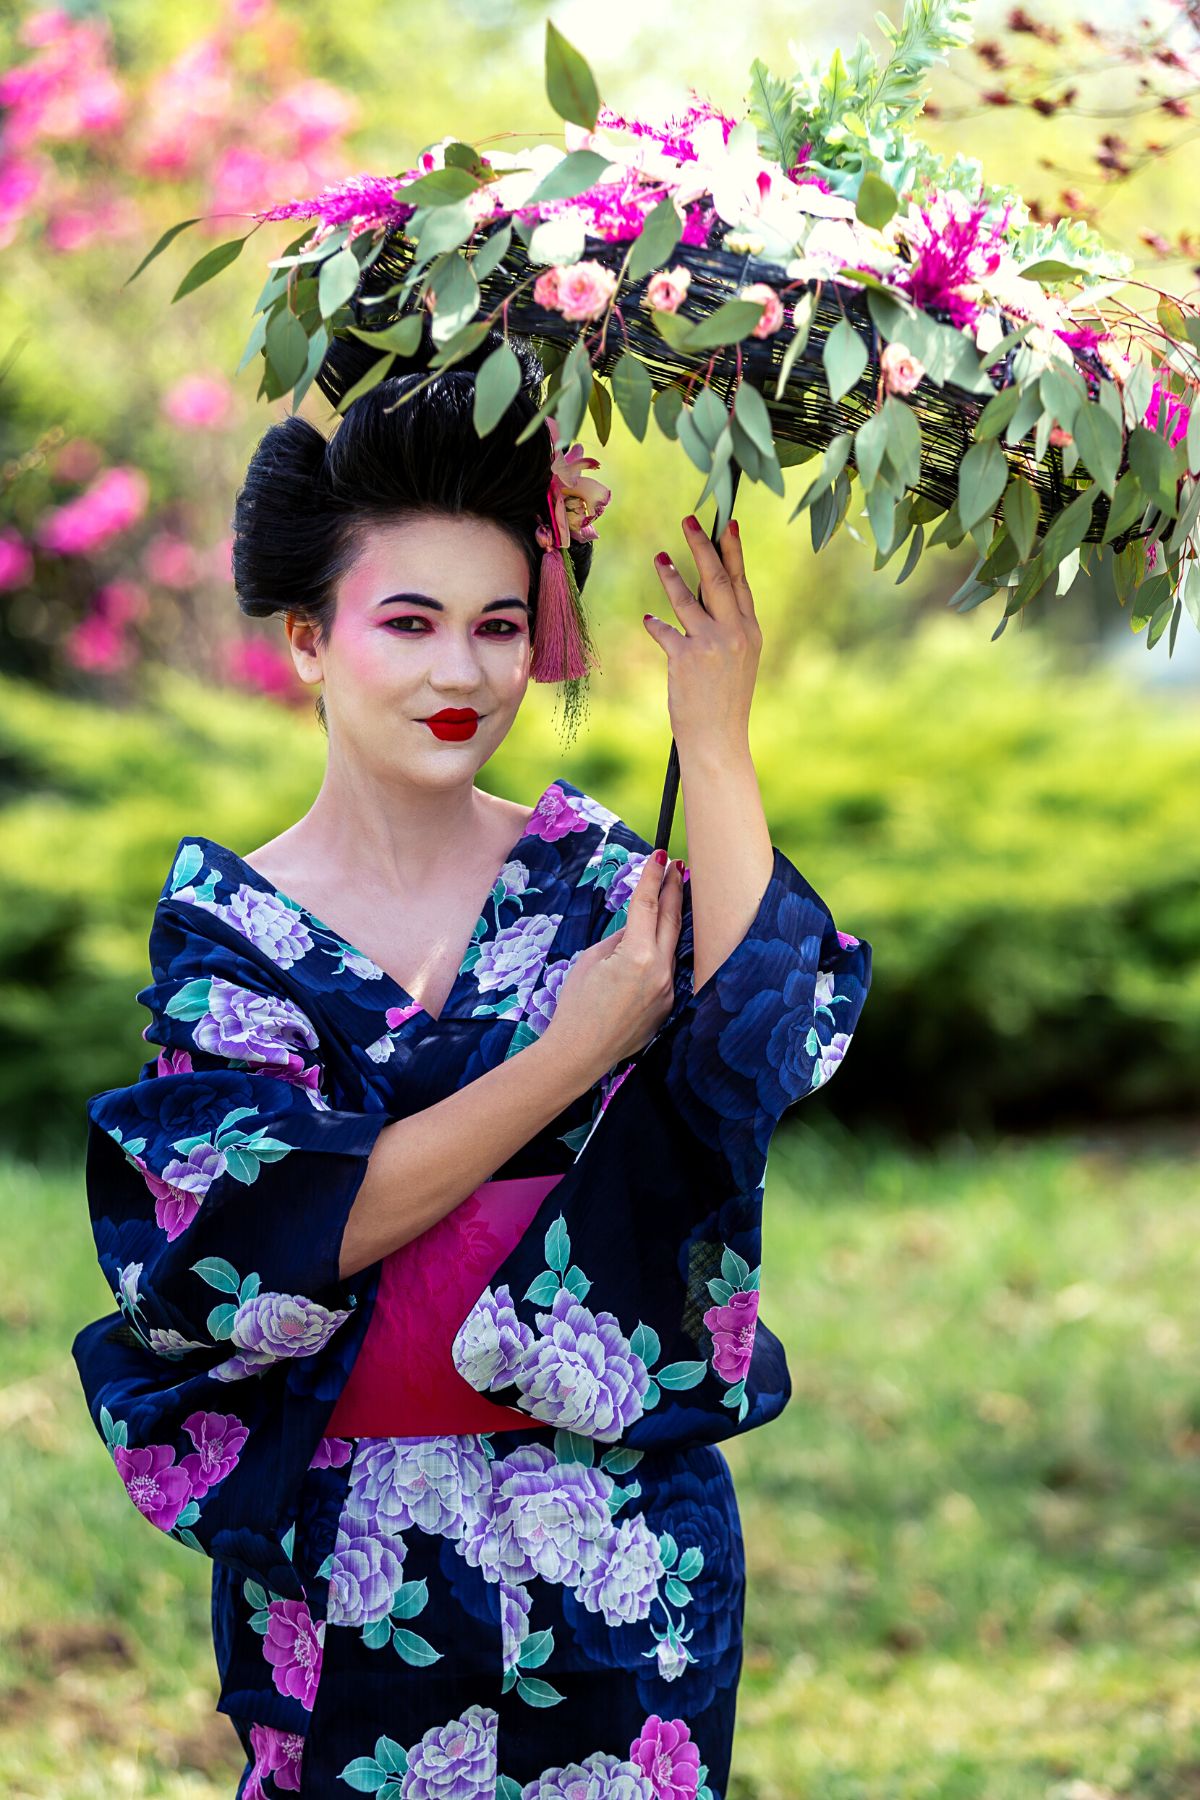 Geisha With Flowered Umbrella on Thursd